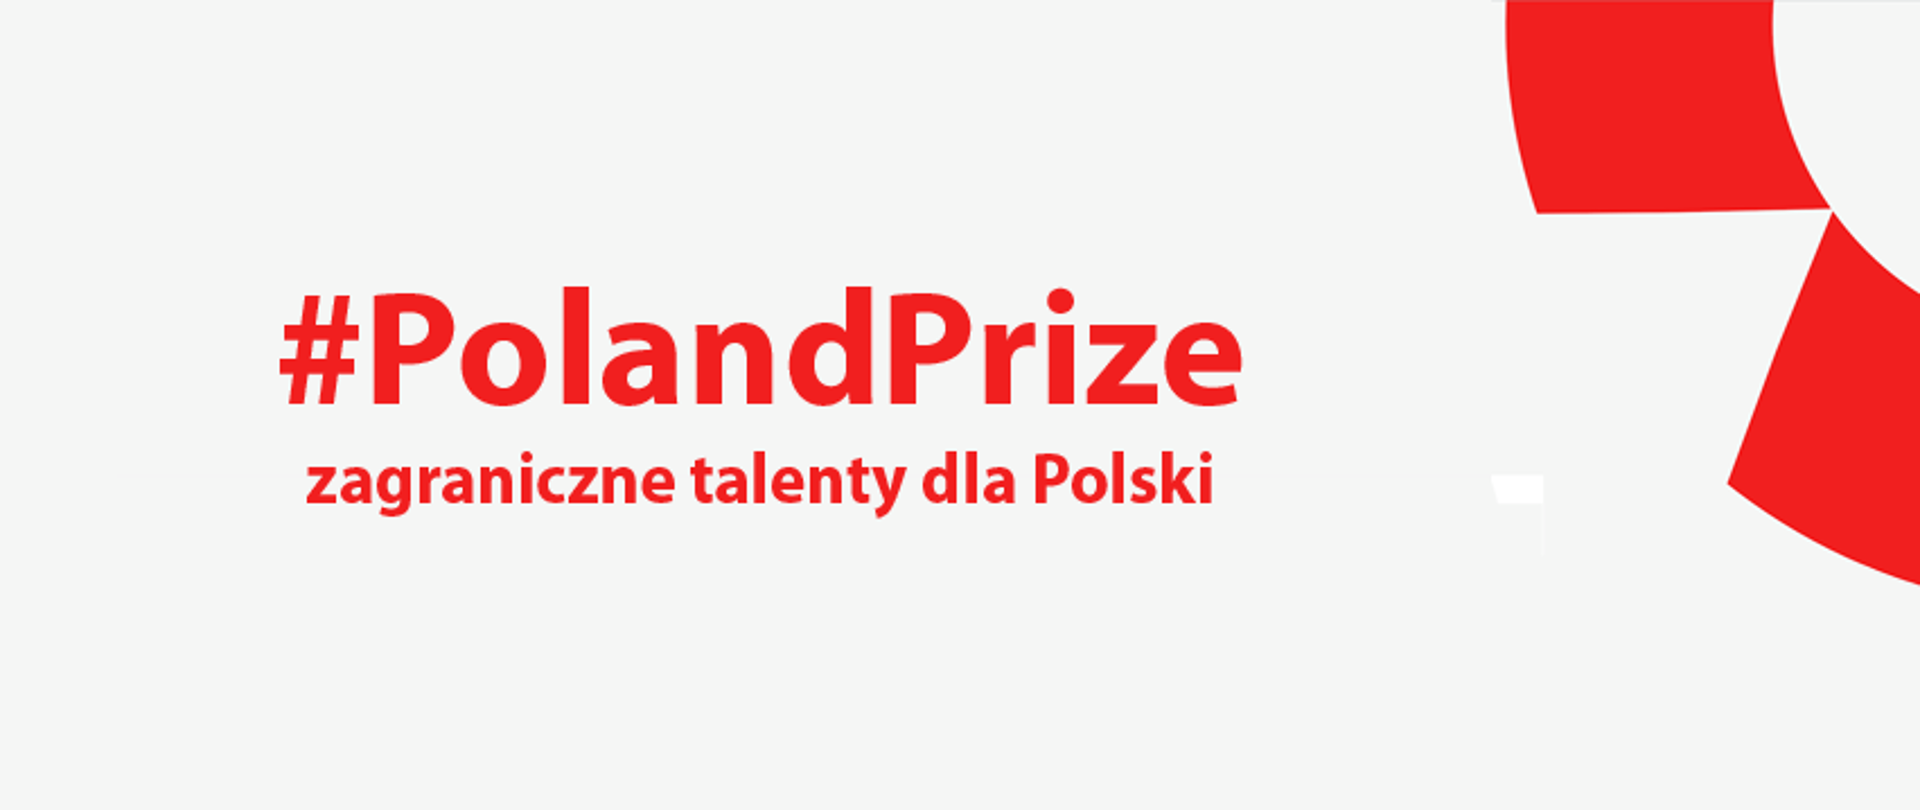 Program ma przyciągać do Polski zagraniczne start-upy.